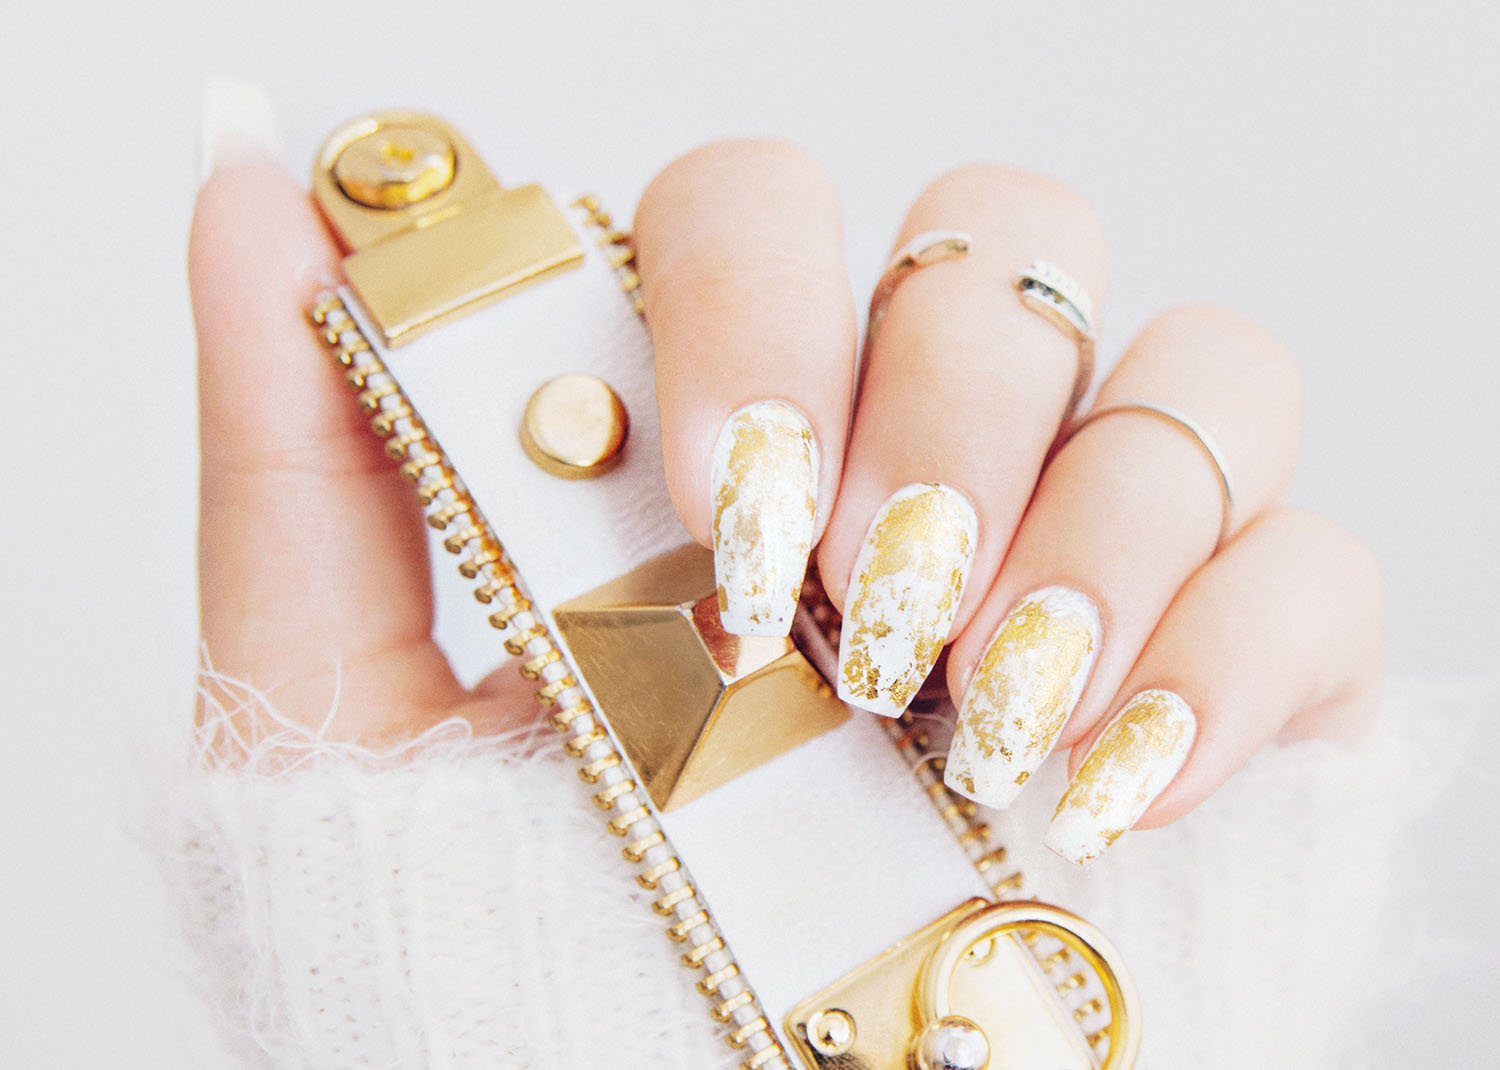 DIY: Gold Marble Nail Design| Guldiga marmornaglar